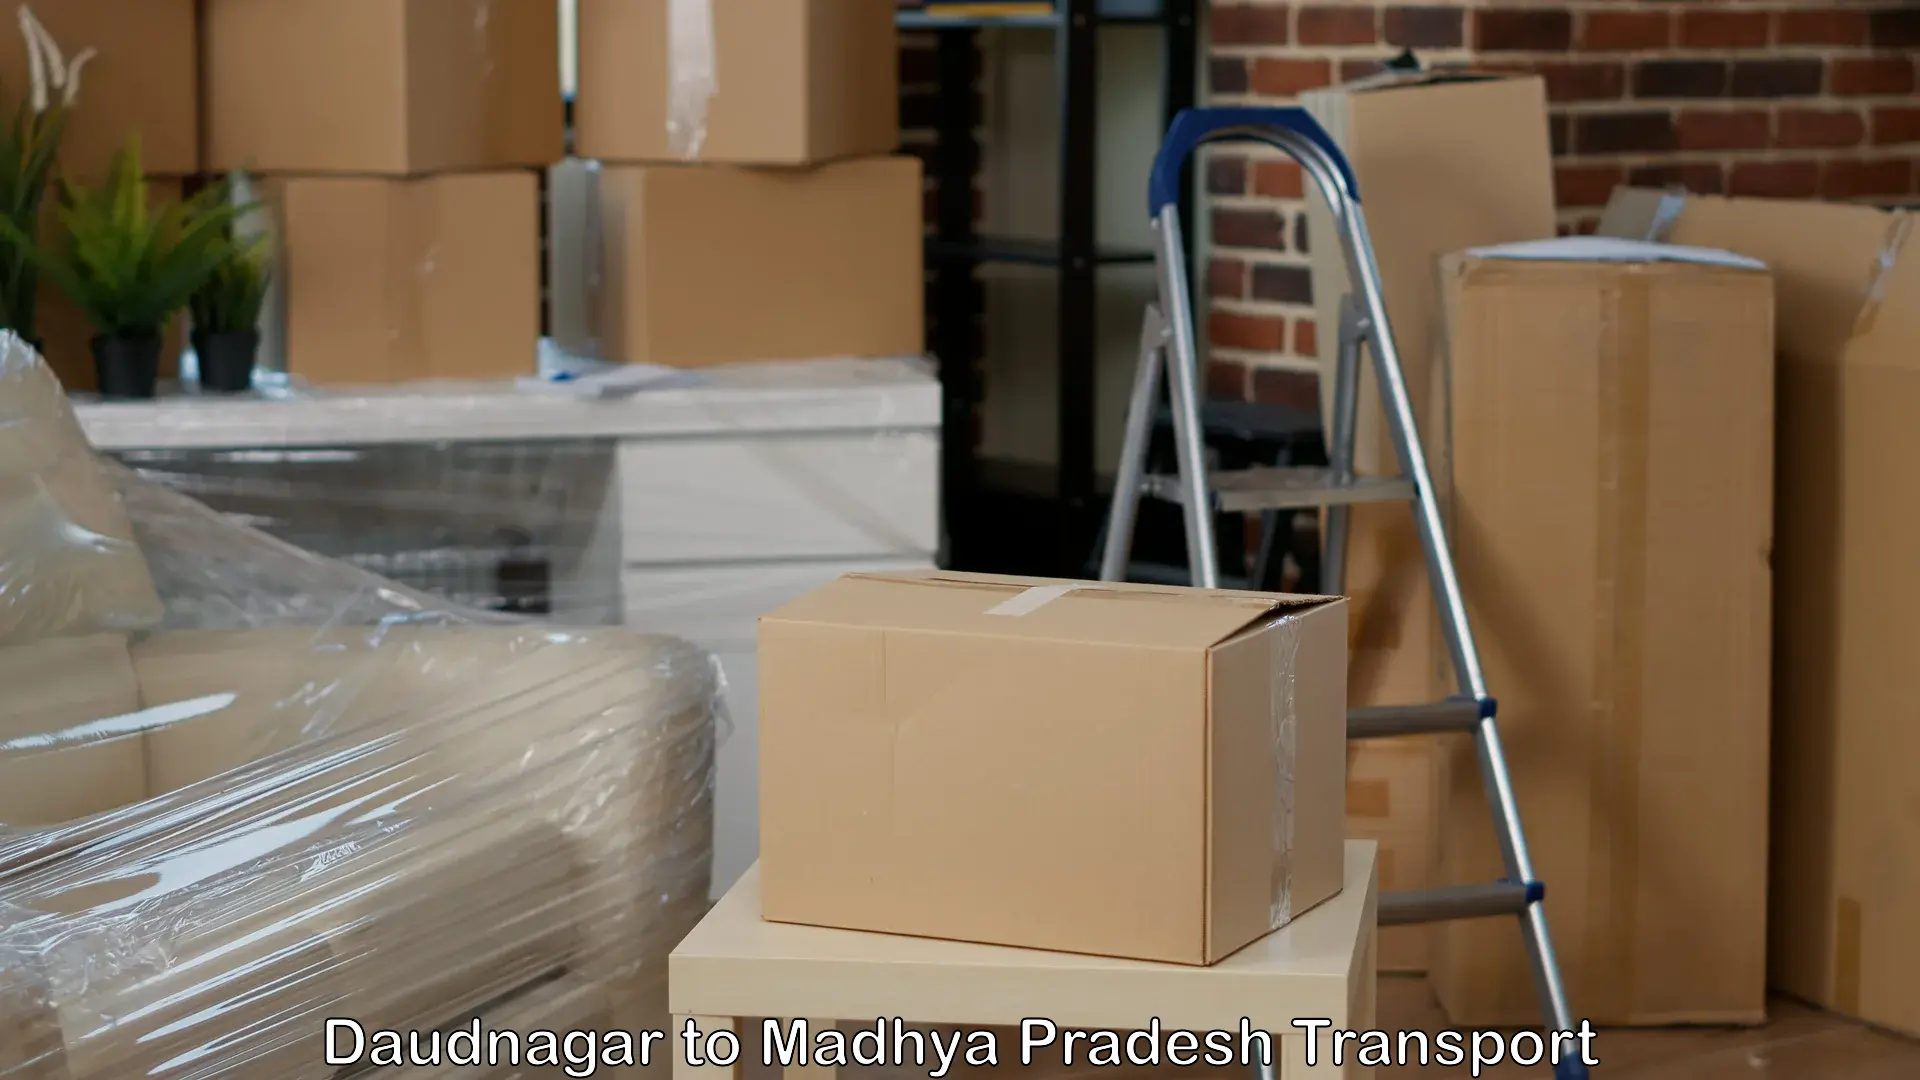 Transport in sharing in Daudnagar to Niwari